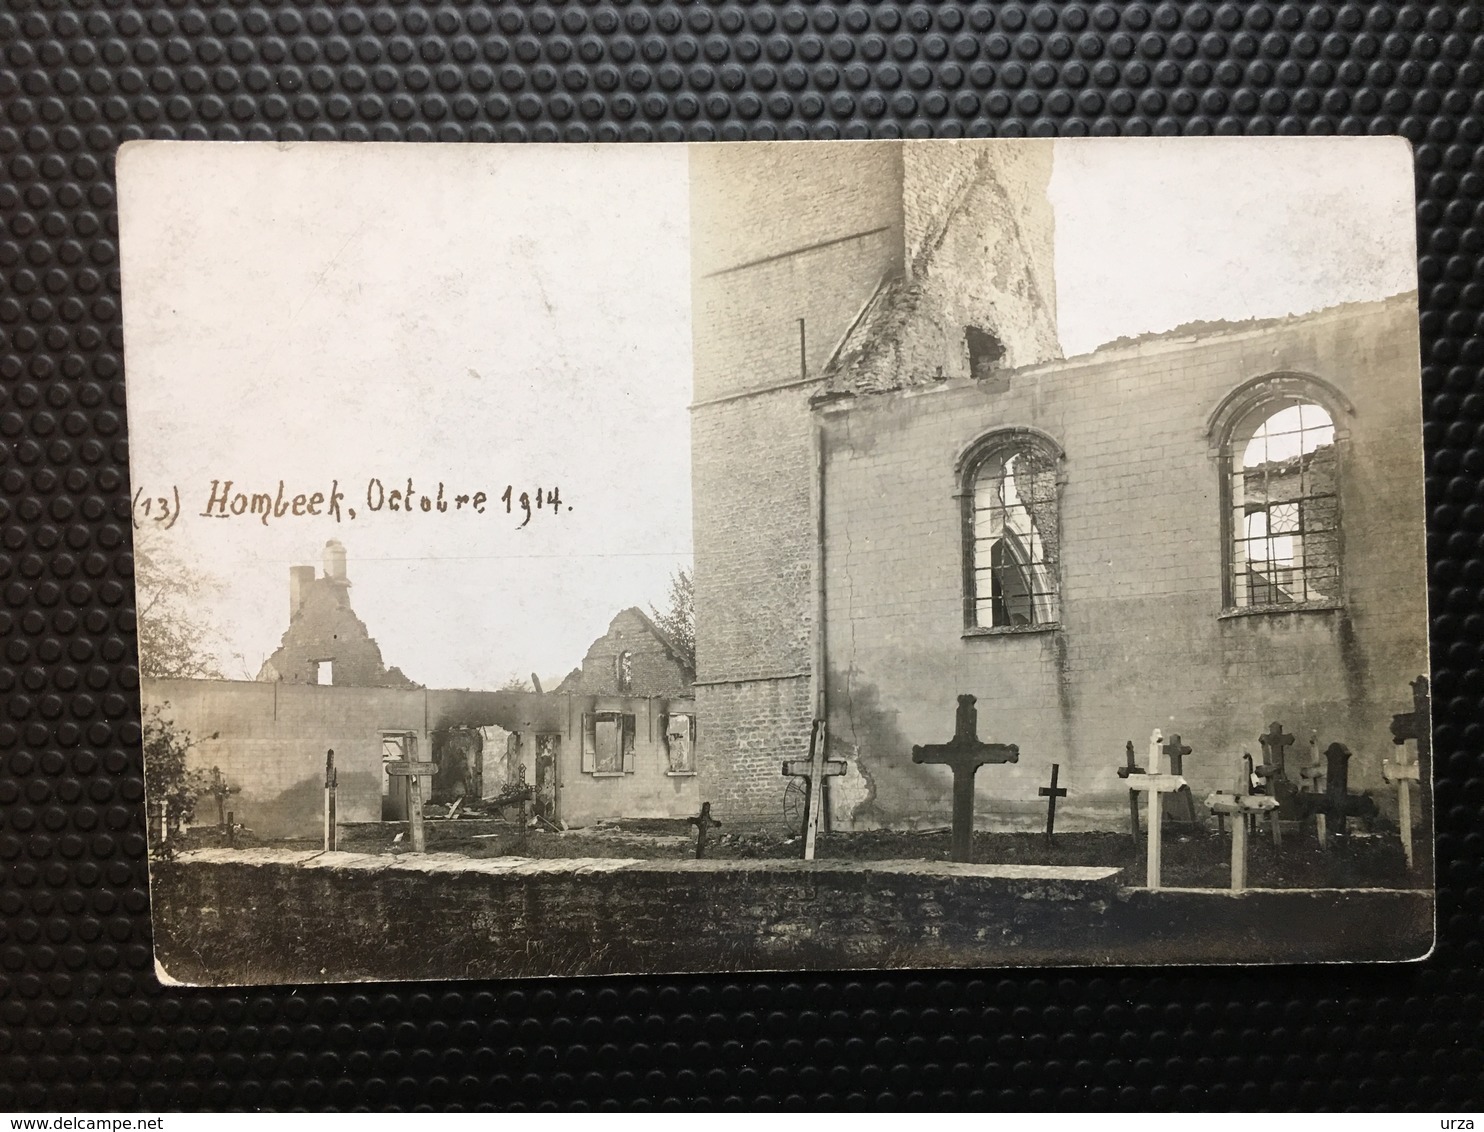 Hombeek/-cpa Photo Des Ruines De L'église Après Les Bombardements De Fin Août 1914. - Malines